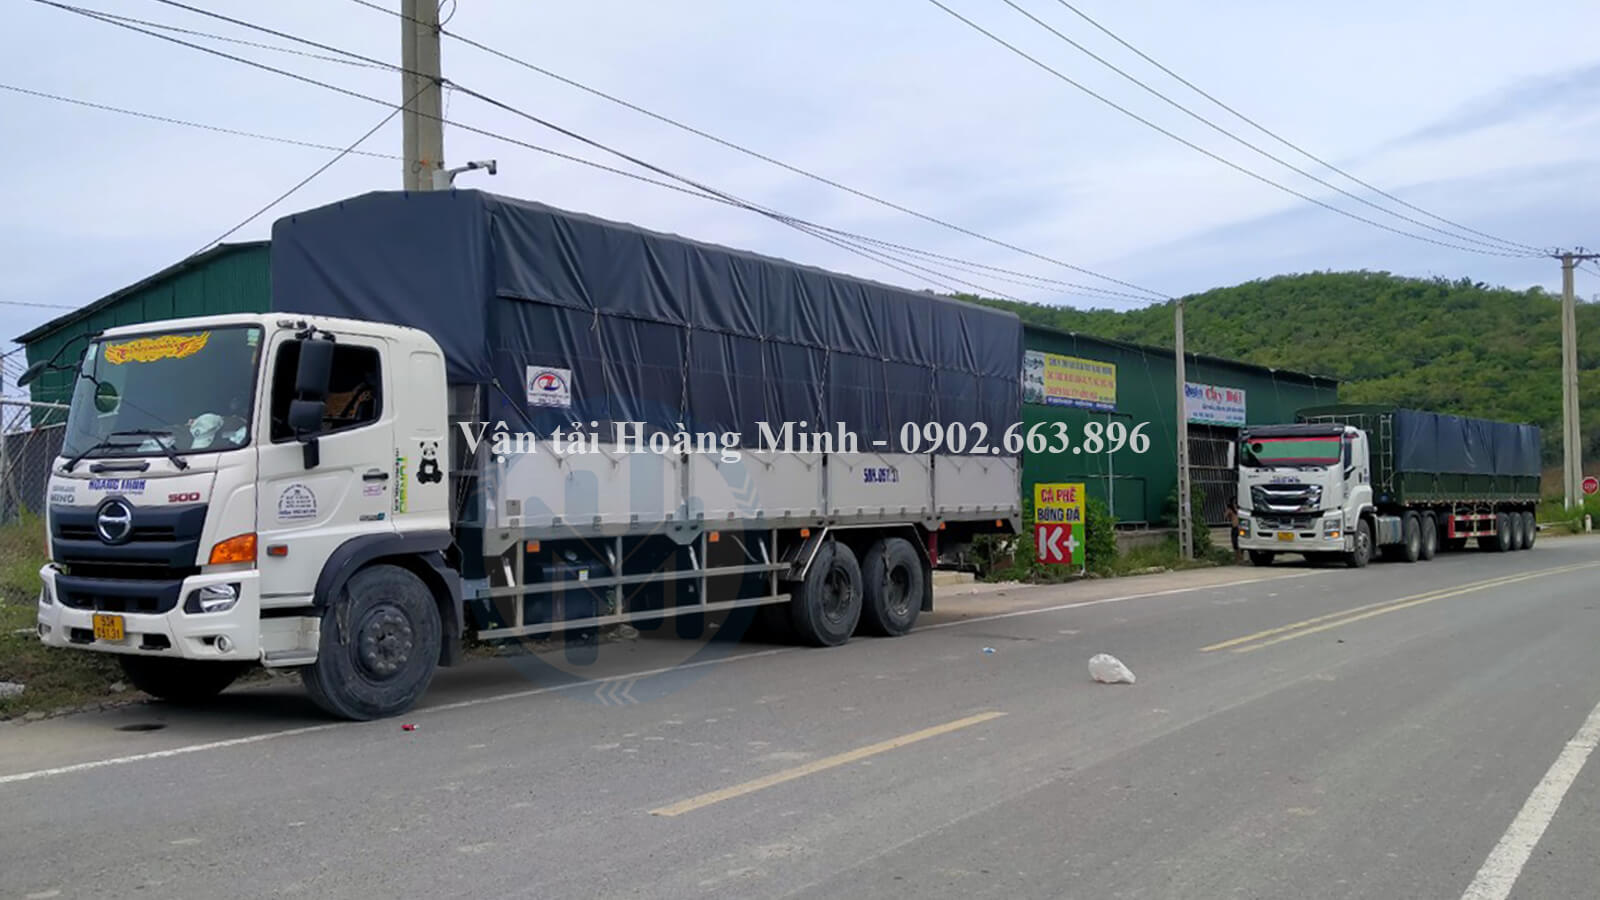 Vận tải Hoàng Minh có cho thuê xe tải chở hàng đi tỉnh không